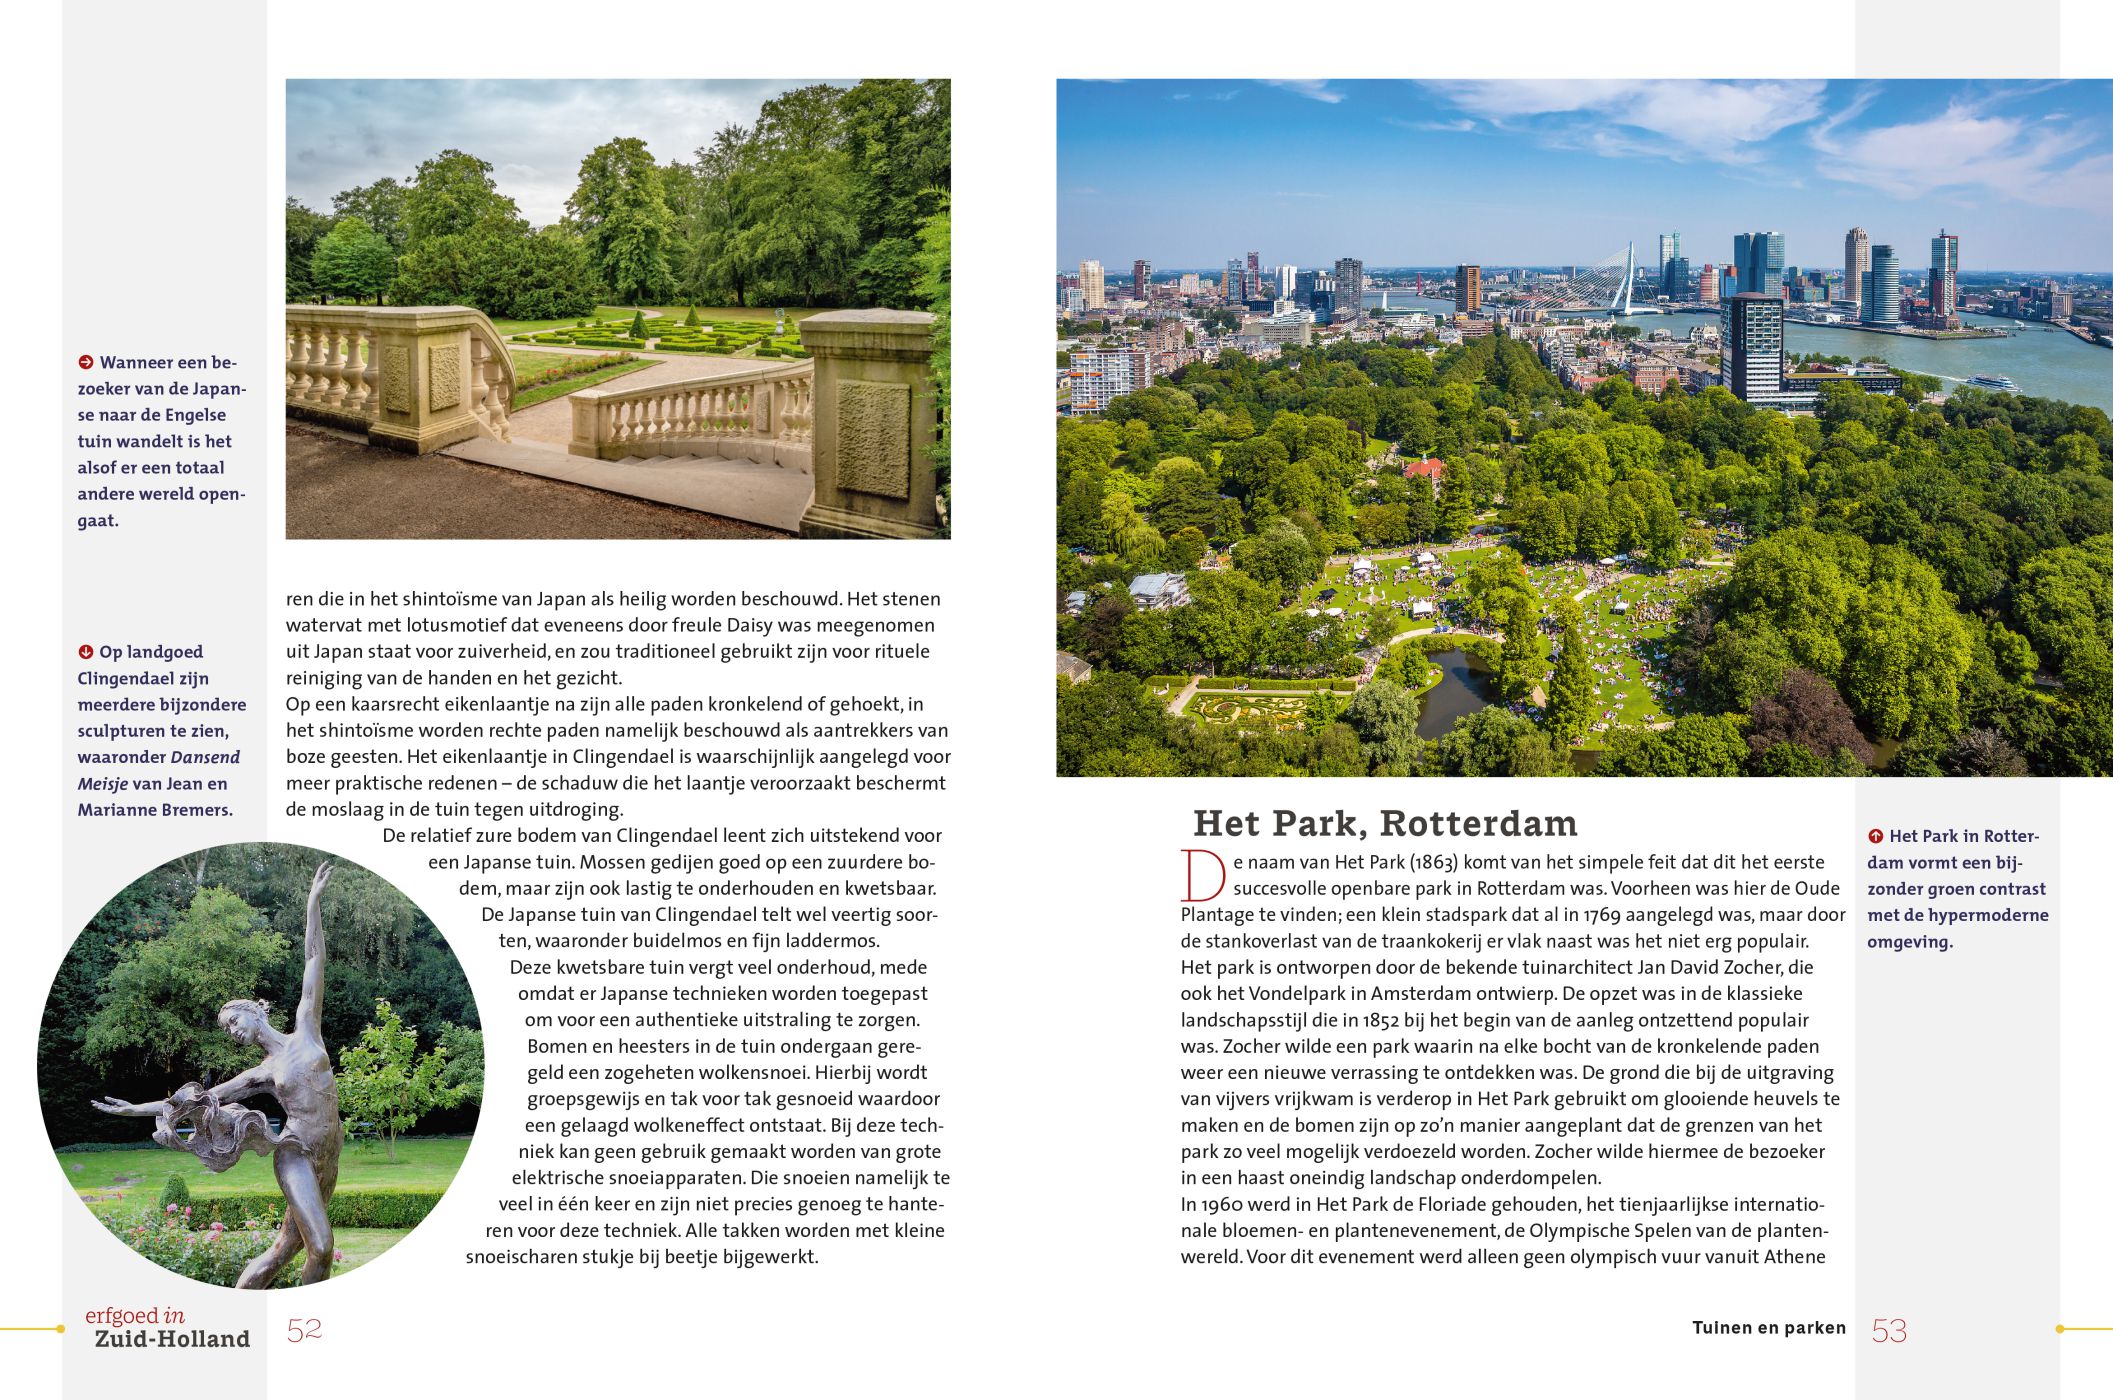 Inkijkexemplaar van het boek: <em>Erfgoed in Zuid-Holland. Tuinen en parken</em> - © Uitgeverij Matrijs